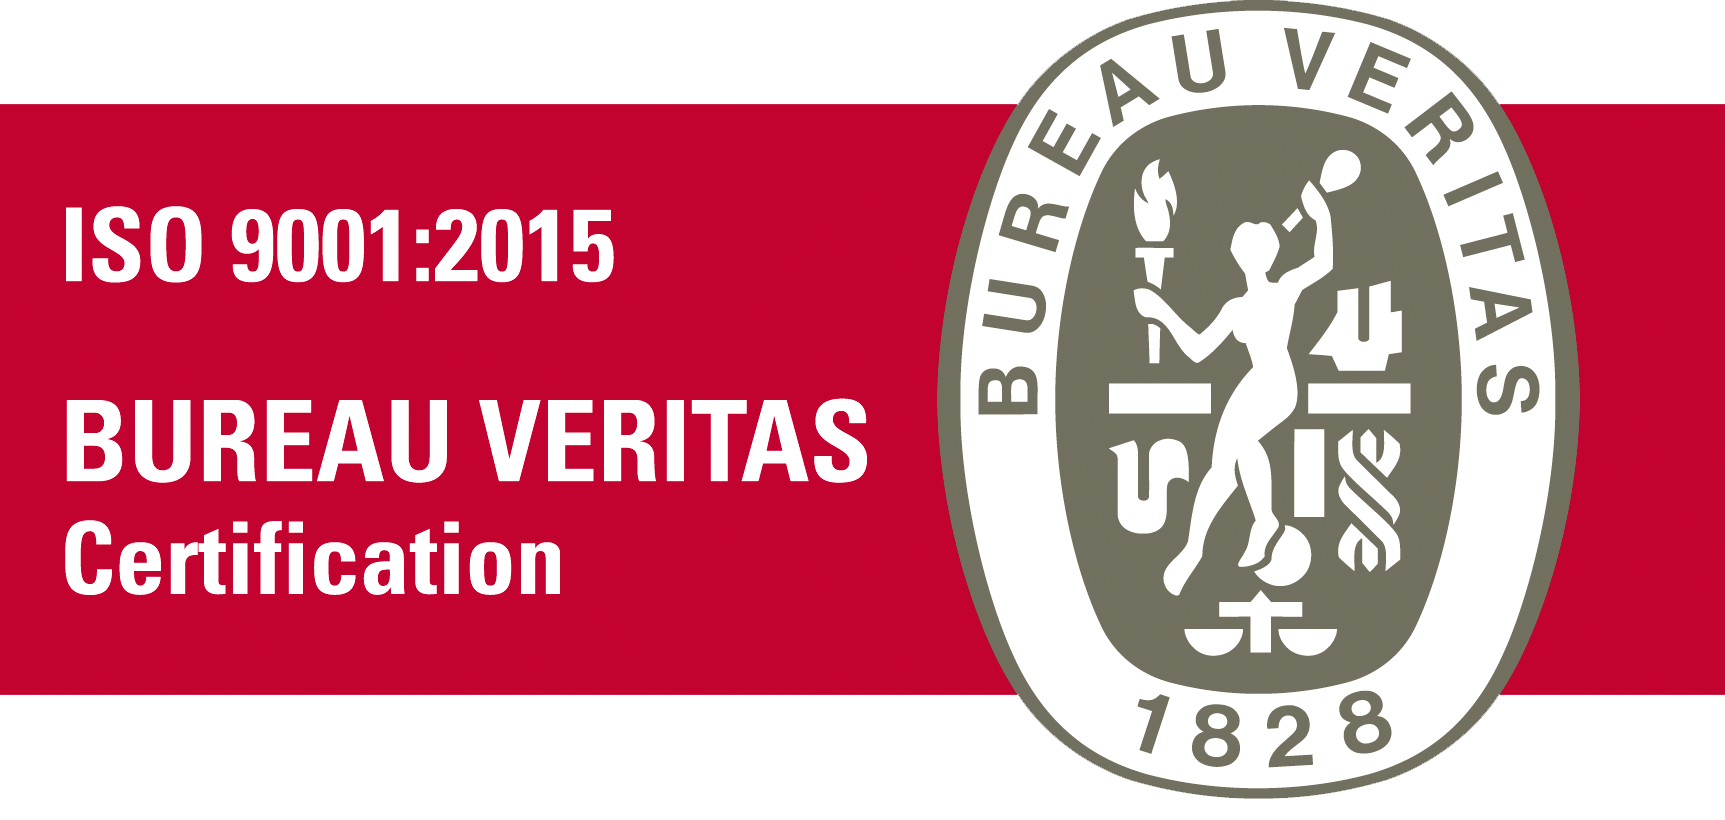 bv certification iso 9001 2015